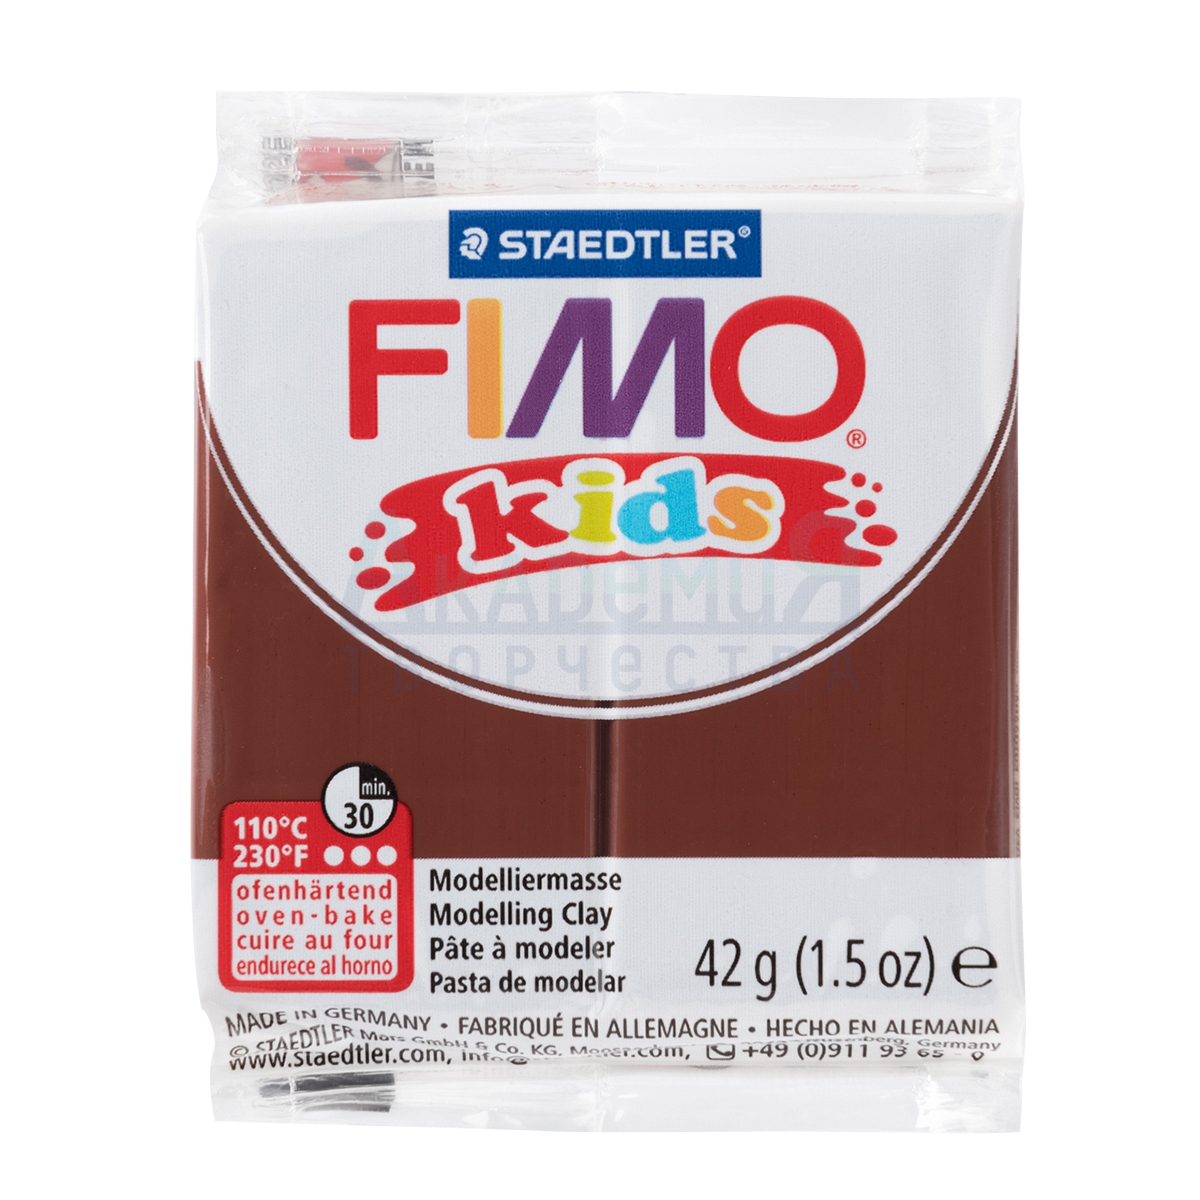 FIMO kids   8030-7  